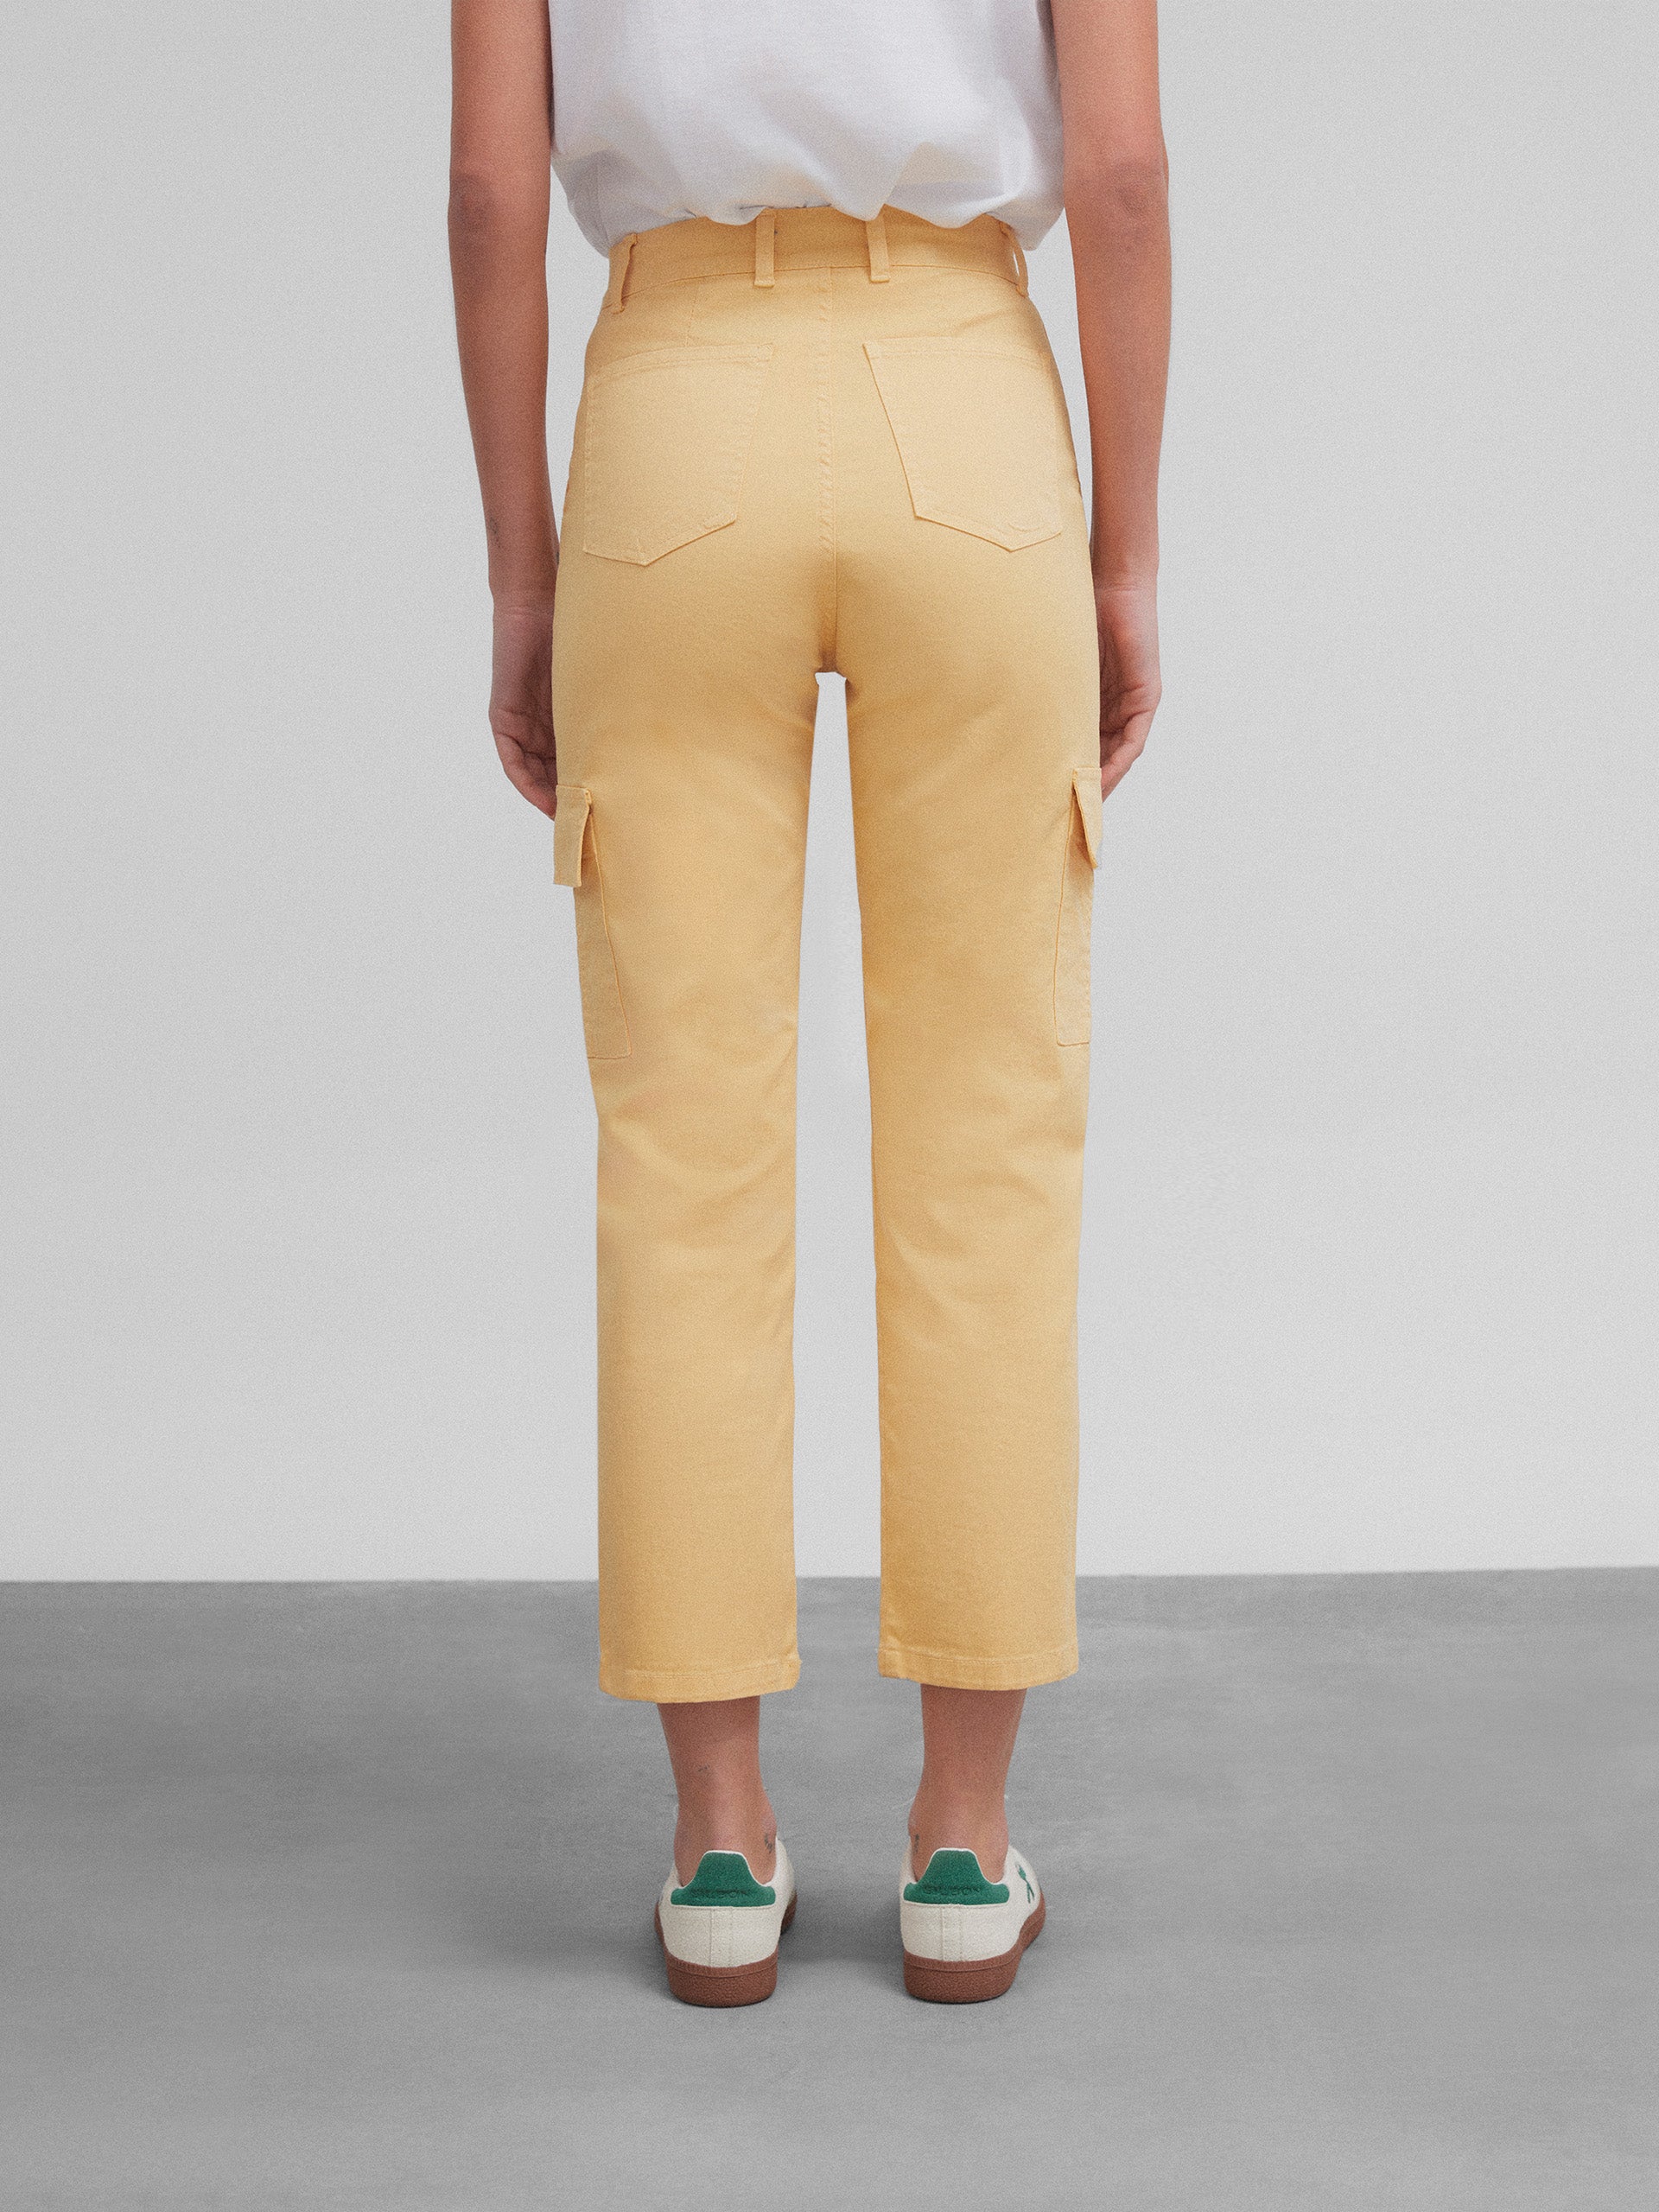 Women's yellow cargo denim pants